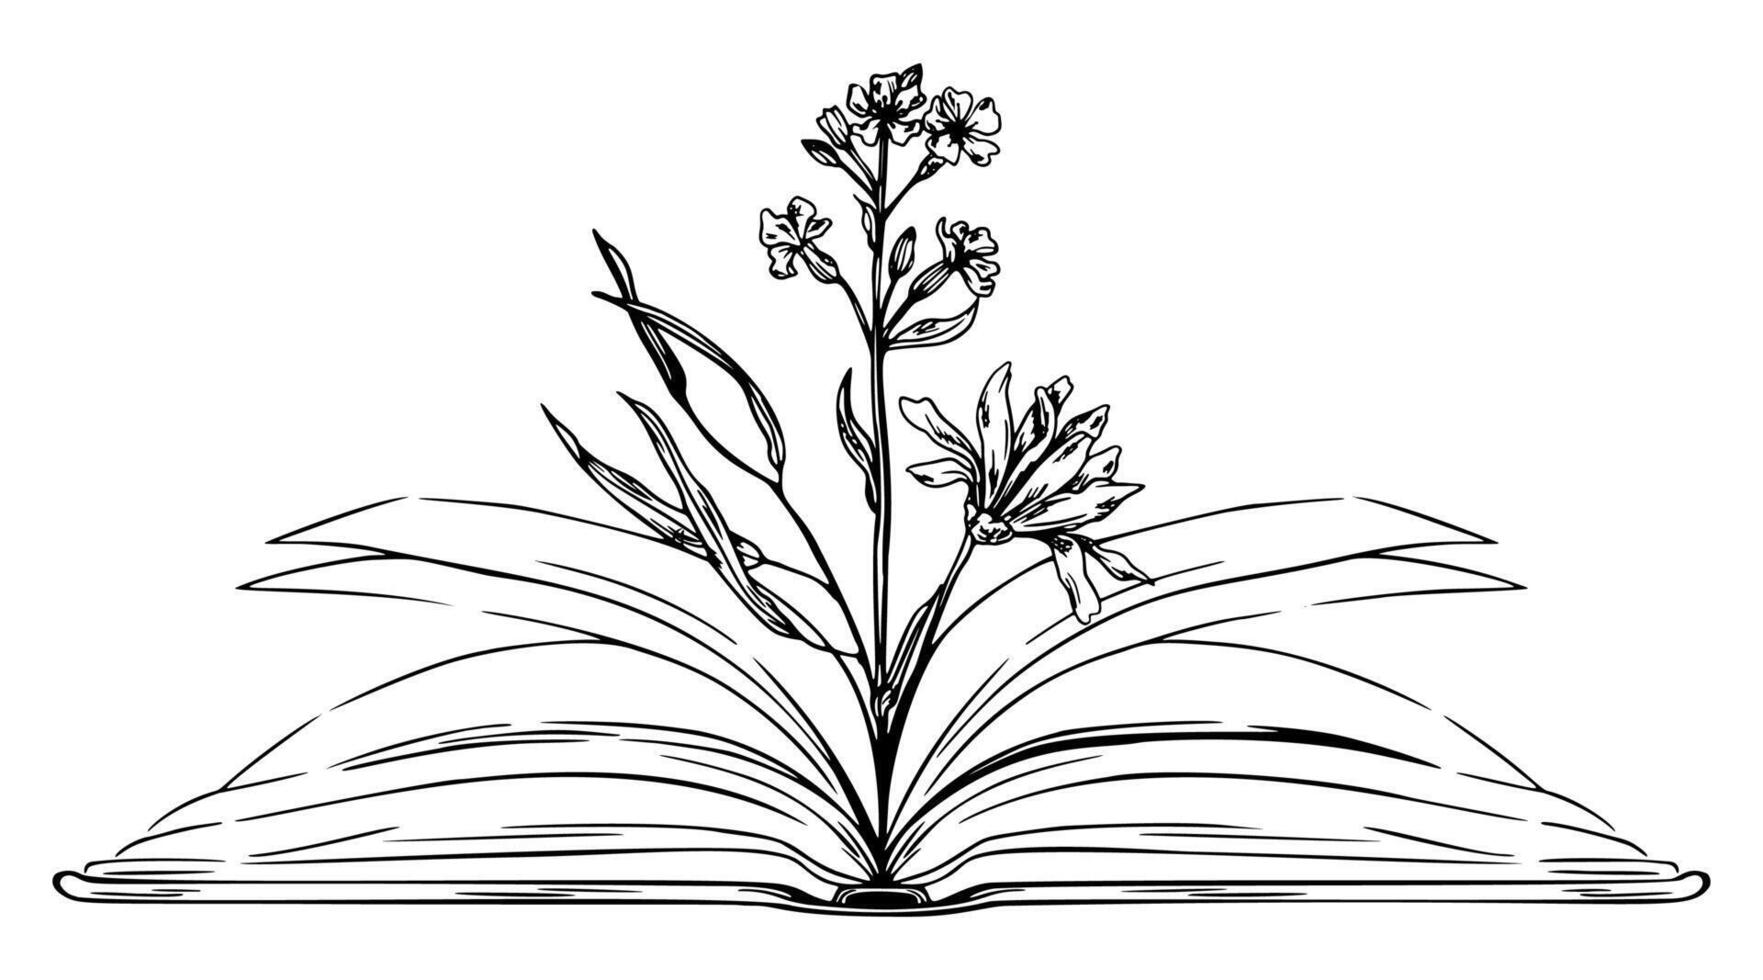 öppen bok med blommor inuti, hand dragen skiss illustration vektor